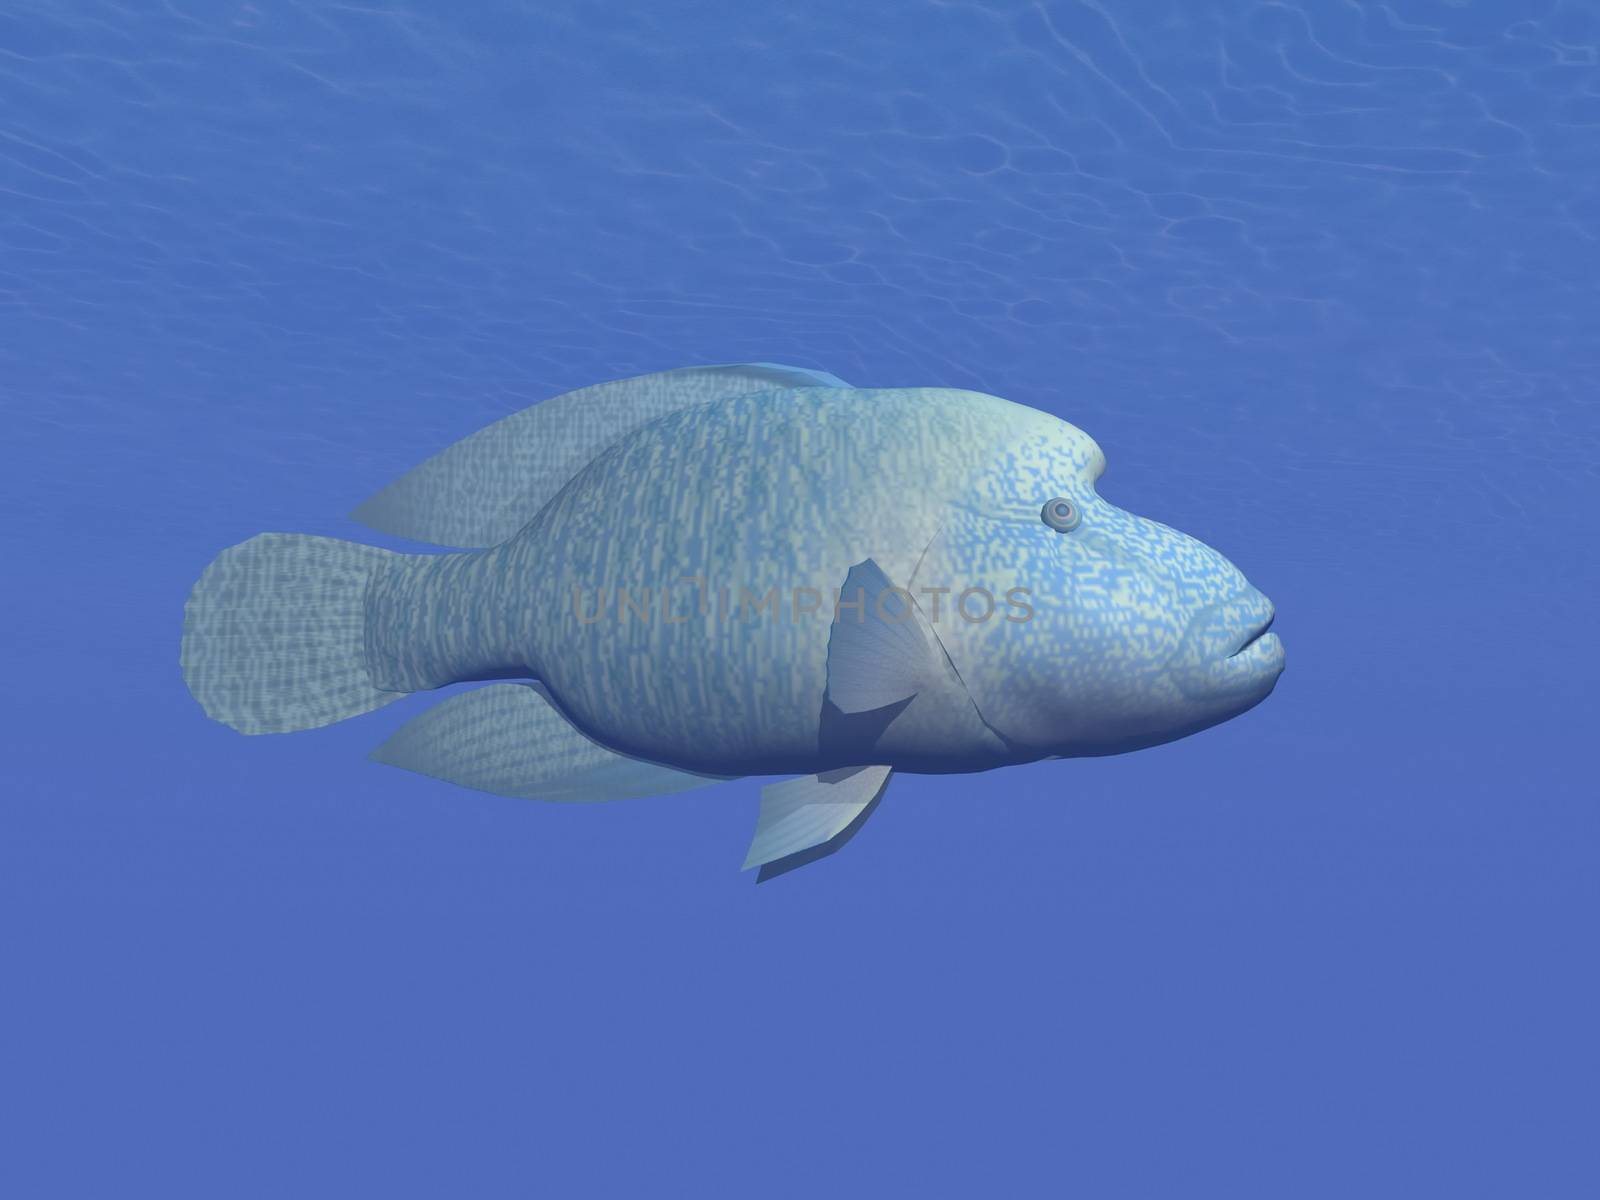 Napoleon fish underwater - 3D render by Elenaphotos21